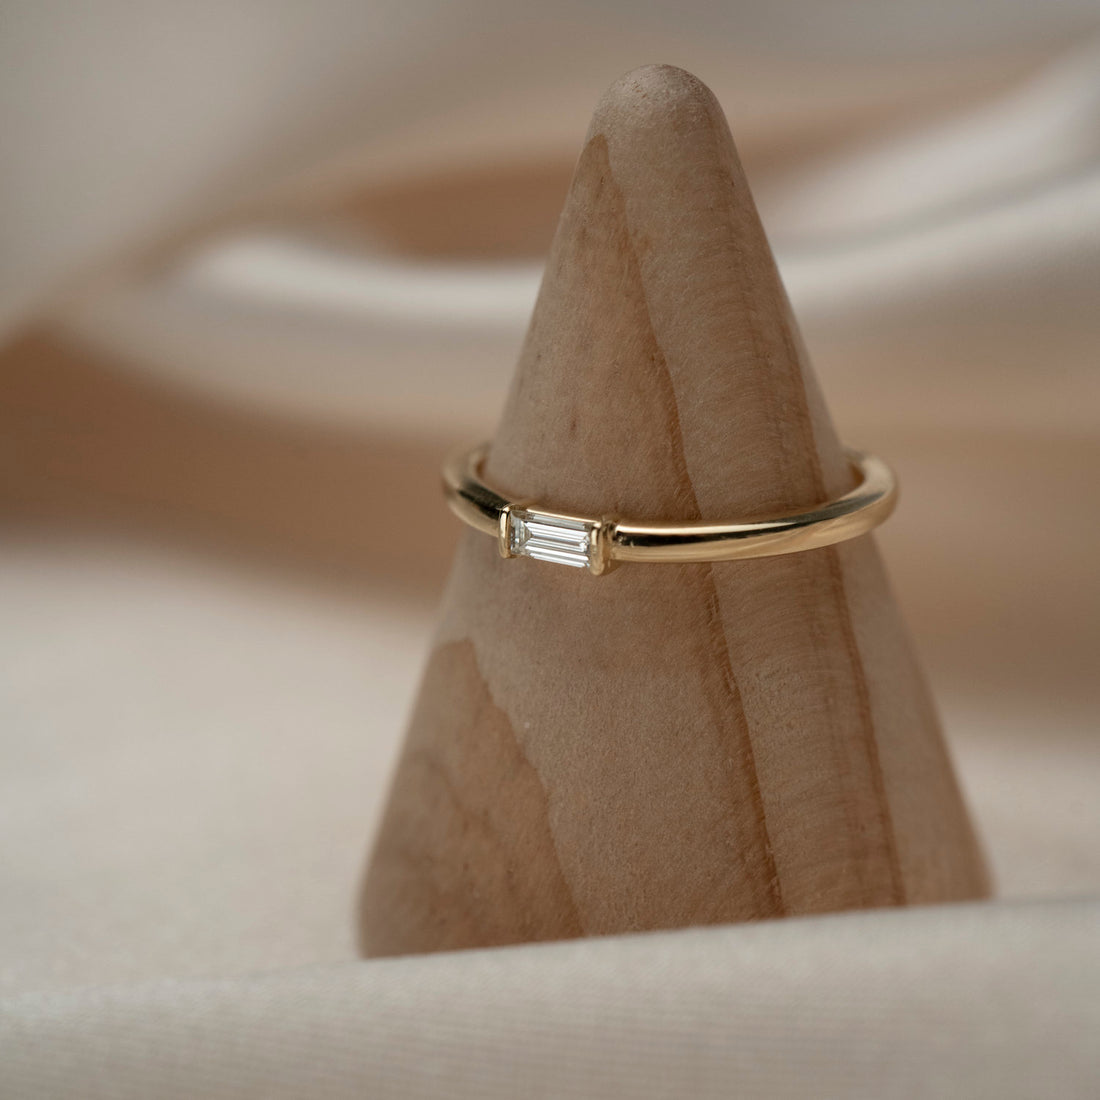 14k Gold Baguette Diamond Ring, Stackable Diamond Ring, Diamond Baguette Ring, Ladies Diamond Ring, Holiday Gift for Her, Baguette Ring